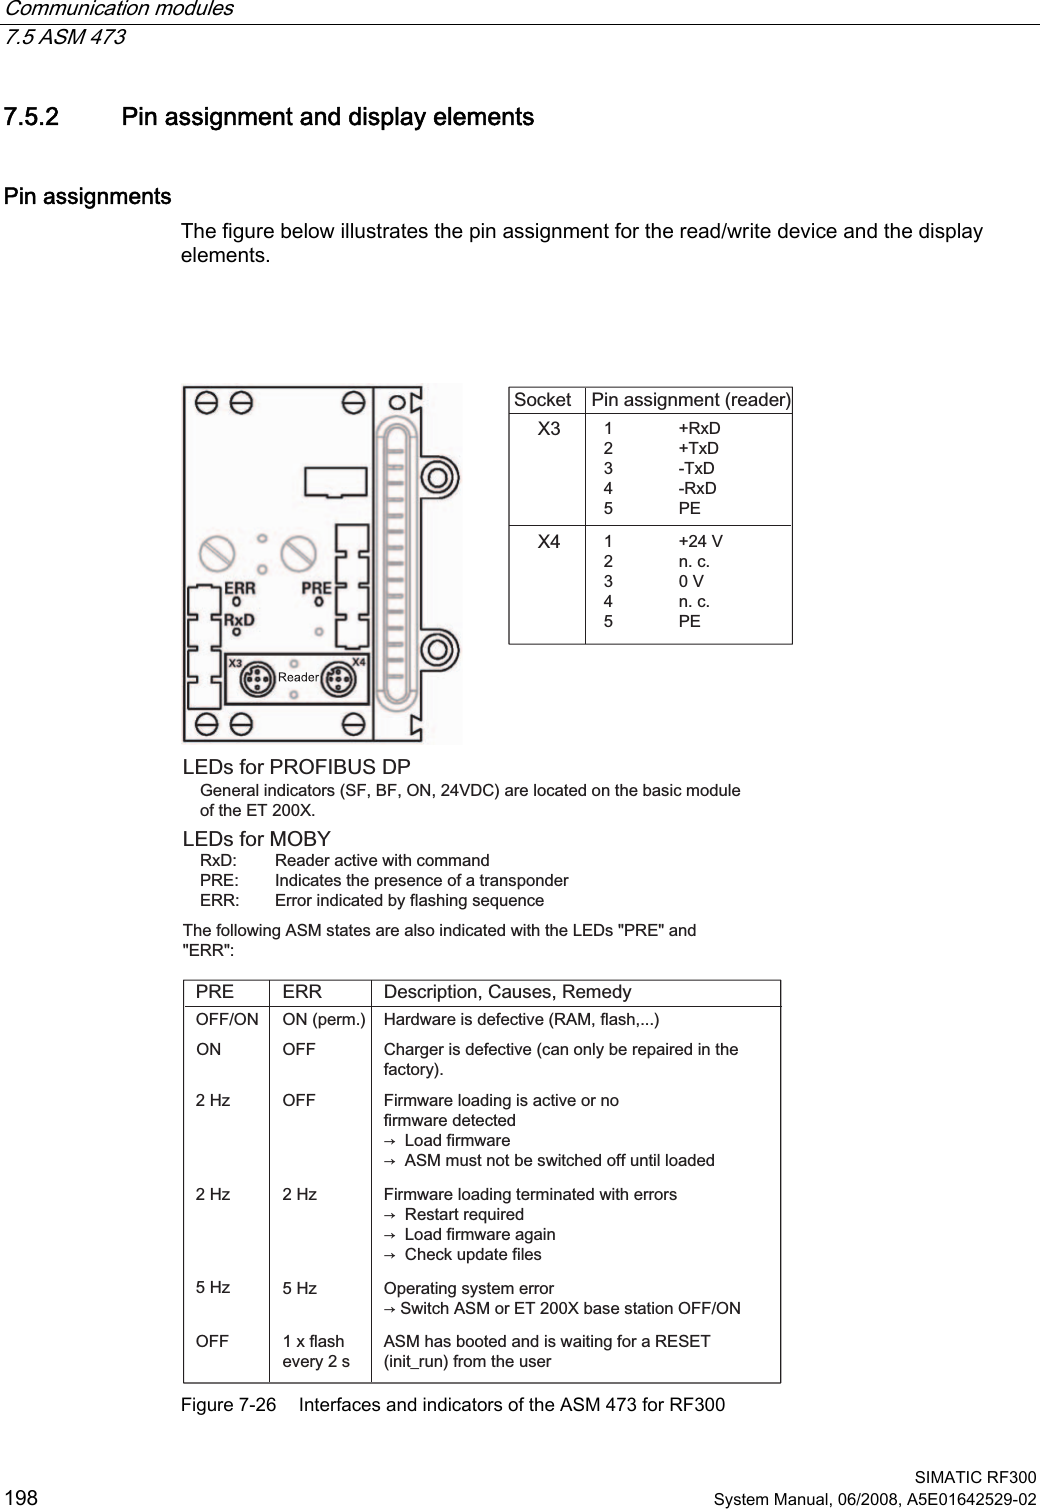 Communication modules   7.5 ASM 473  SIMATIC RF300 198 System Manual, 06/2008, A5E01642529-02 7.5.2 Pin assignment and display elements Pin assignments The figure below illustrates the pin assignment for the read/write device and the display elements.    2))+]+]2))21+]+]+]2));;21SHUP2))21 5[&apos; 7[&apos; 7[&apos; 5[&apos; 3( 9 QF 9 QF 3((5535([IODVKHYHU\V6RFNHW 3LQDVVLJQPHQWUHDGHU/(&apos;VIRU352),%86&apos;3*HQHUDOLQGLFDWRUV6)%)219&apos;&amp;DUHORFDWHGRQWKHEDVLFPRGXOHRIWKH(7;/(&apos;VIRU02%&lt;5[&apos; 5HDGHUDFWLYHZLWKFRPPDQG35( ,QGLFDWHVWKHSUHVHQFHRIDWUDQVSRQGHU(55 (UURULQGLFDWHGE\IODVKLQJVHTXHQFH7KHIROORZLQJ$60VWDWHVDUHDOVRLQGLFDWHGZLWKWKH/(&apos;V35(DQG(55&apos;HVFULSWLRQ&amp;DXVHV5HPHG\+DUGZDUHLVGHIHFWLYH5$0IODVK&amp;KDUJHULVGHIHFWLYHFDQRQO\EHUHSDLUHGLQWKHIDFWRU\)LUPZDUHORDGLQJLVDFWLYHRUQRILUPZDUHGHWHFWHGൺ/RDGILUPZDUHൺ$60PXVWQRWEHVZLWFKHGRIIXQWLOORDGHG)LUPZDUHORDGLQJWHUPLQDWHGZLWKHUURUVൺ5HVWDUWUHTXLUHGൺ/RDGILUPZDUHDJDLQൺ&amp;KHFNXSGDWHILOHV2SHUDWLQJV\VWHPHUURUൺ6ZLWFK$60RU(7;EDVHVWDWLRQ2))21$60KDVERRWHGDQGLVZDLWLQJIRUD5(6(7LQLWBUXQIURPWKHXVHU Figure 7-26  Interfaces and indicators of the ASM 473 for RF300 